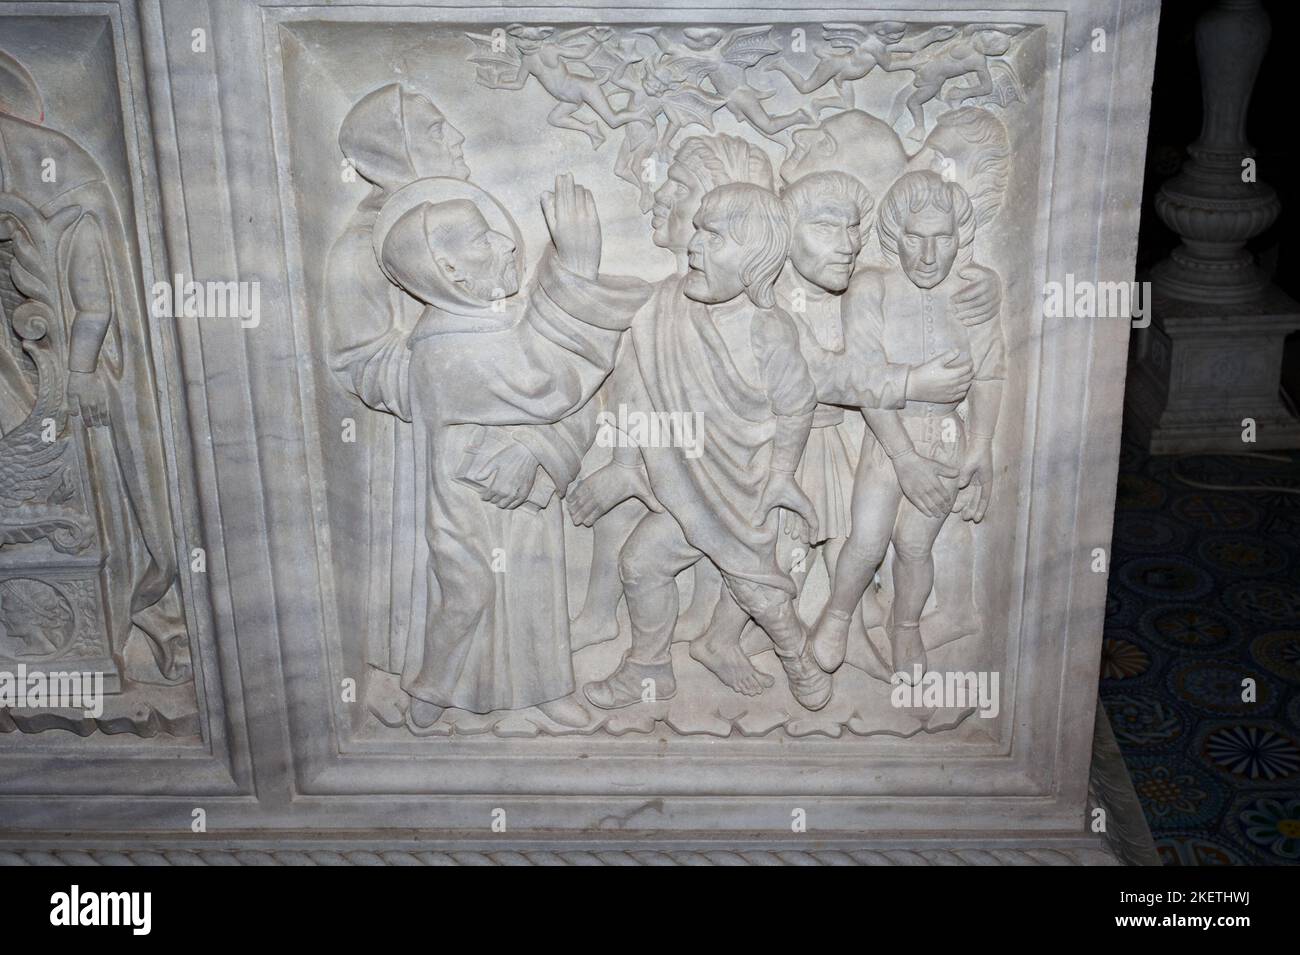 St.Columbanus livre le sarcophage possédé de Saint Columbanus (par Giovanni dei Patriarchi, 1480) - crypte de l'abbaye de Bobbio, Emilia Romagna, Italie Banque D'Images